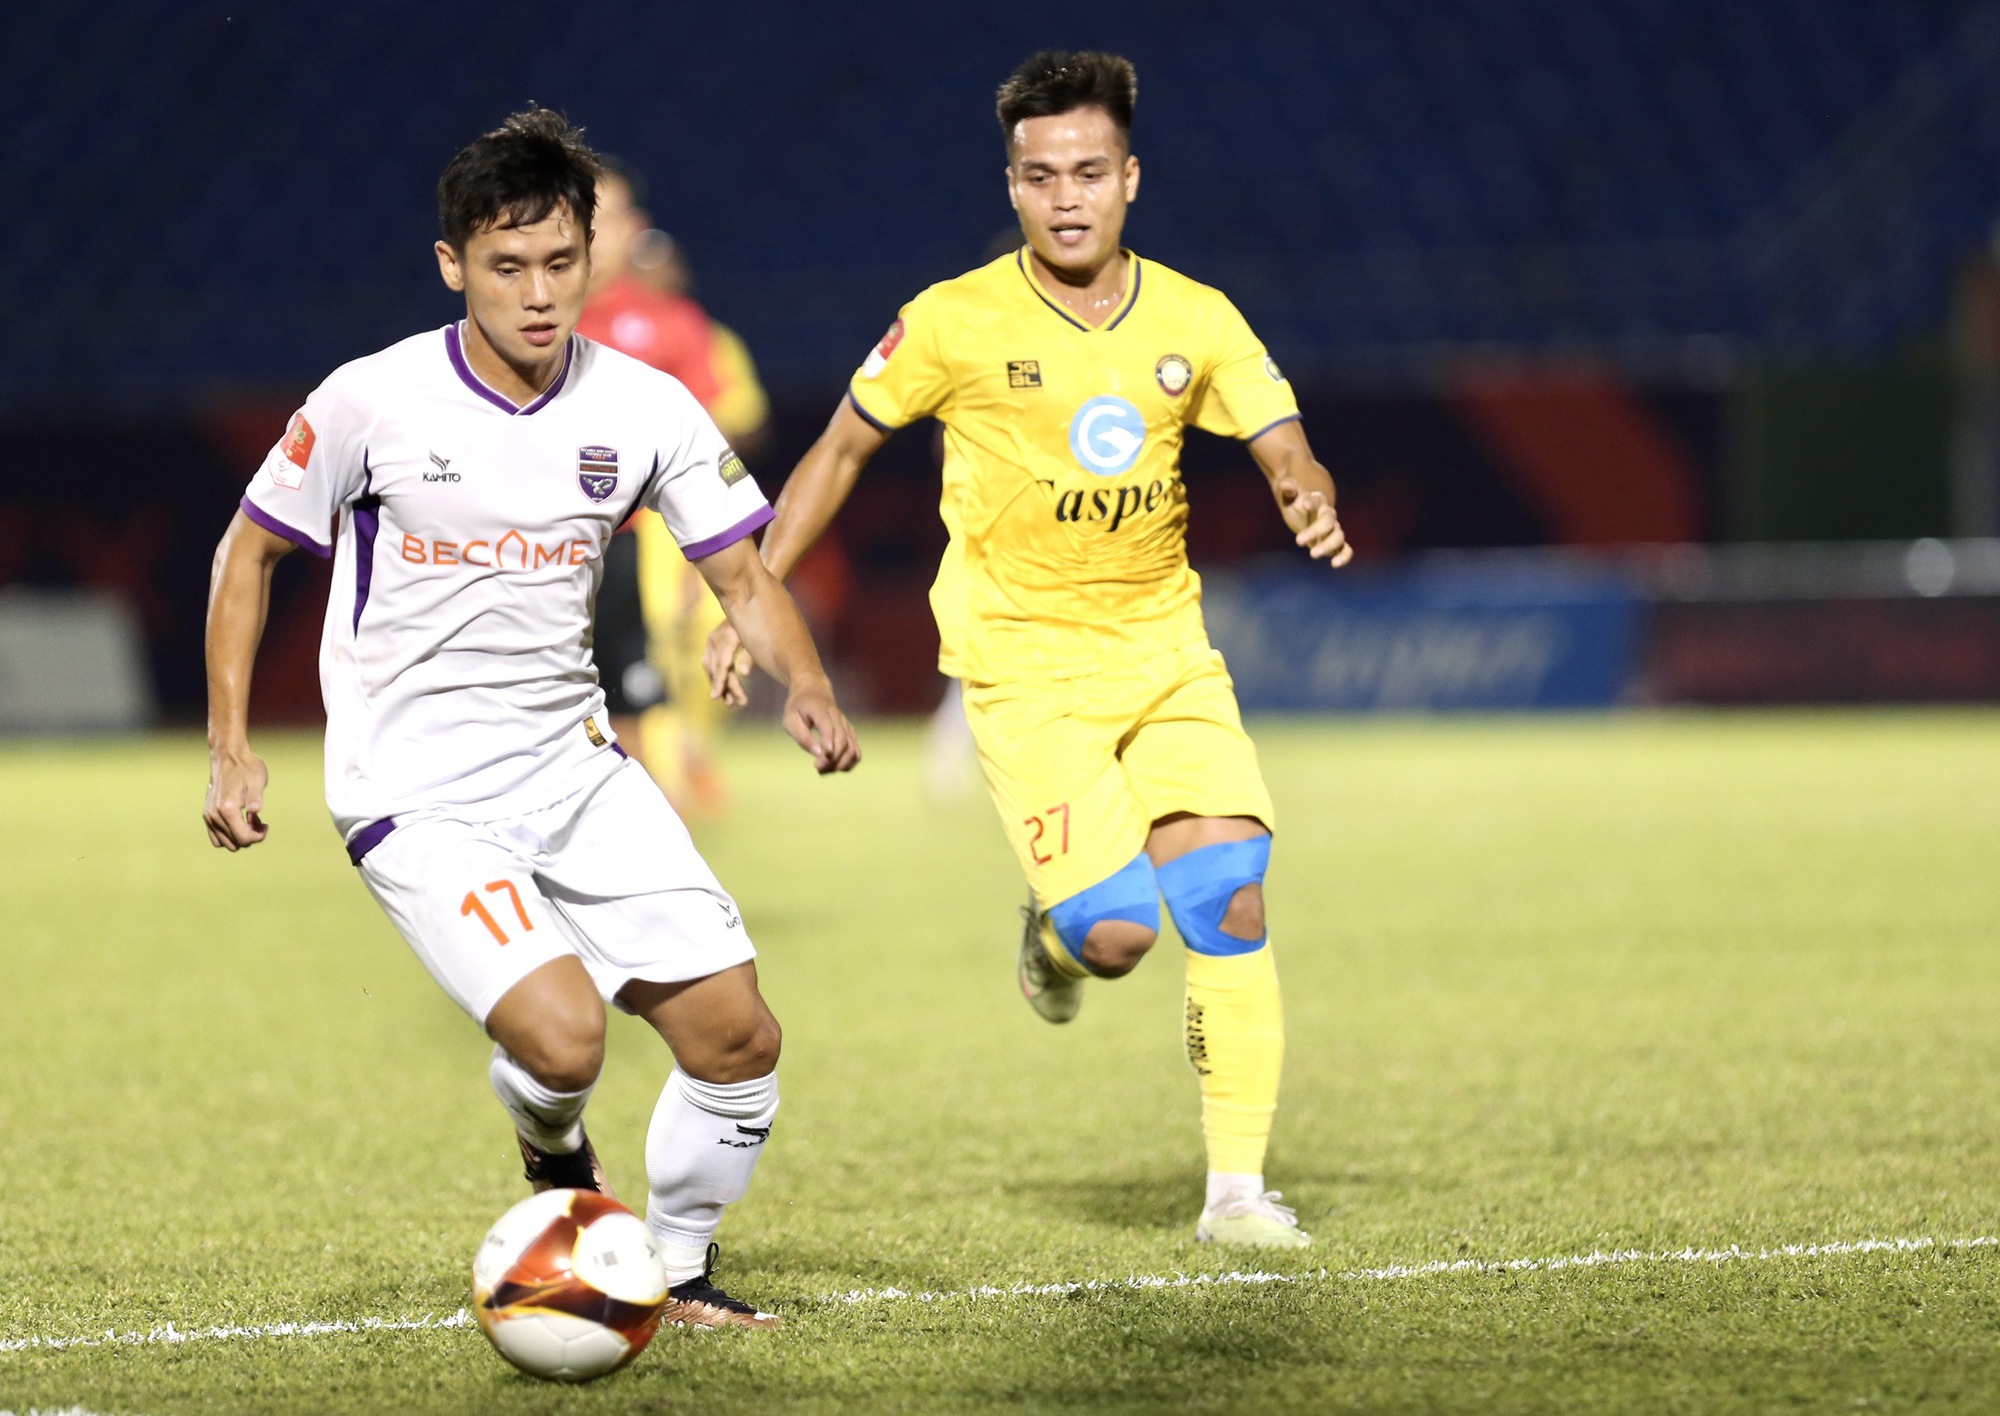 HLV Lê Huỳnh Đức tiết lộ lý do không ăn mừng khi học trò ghi bàn thắng- Ảnh 2.